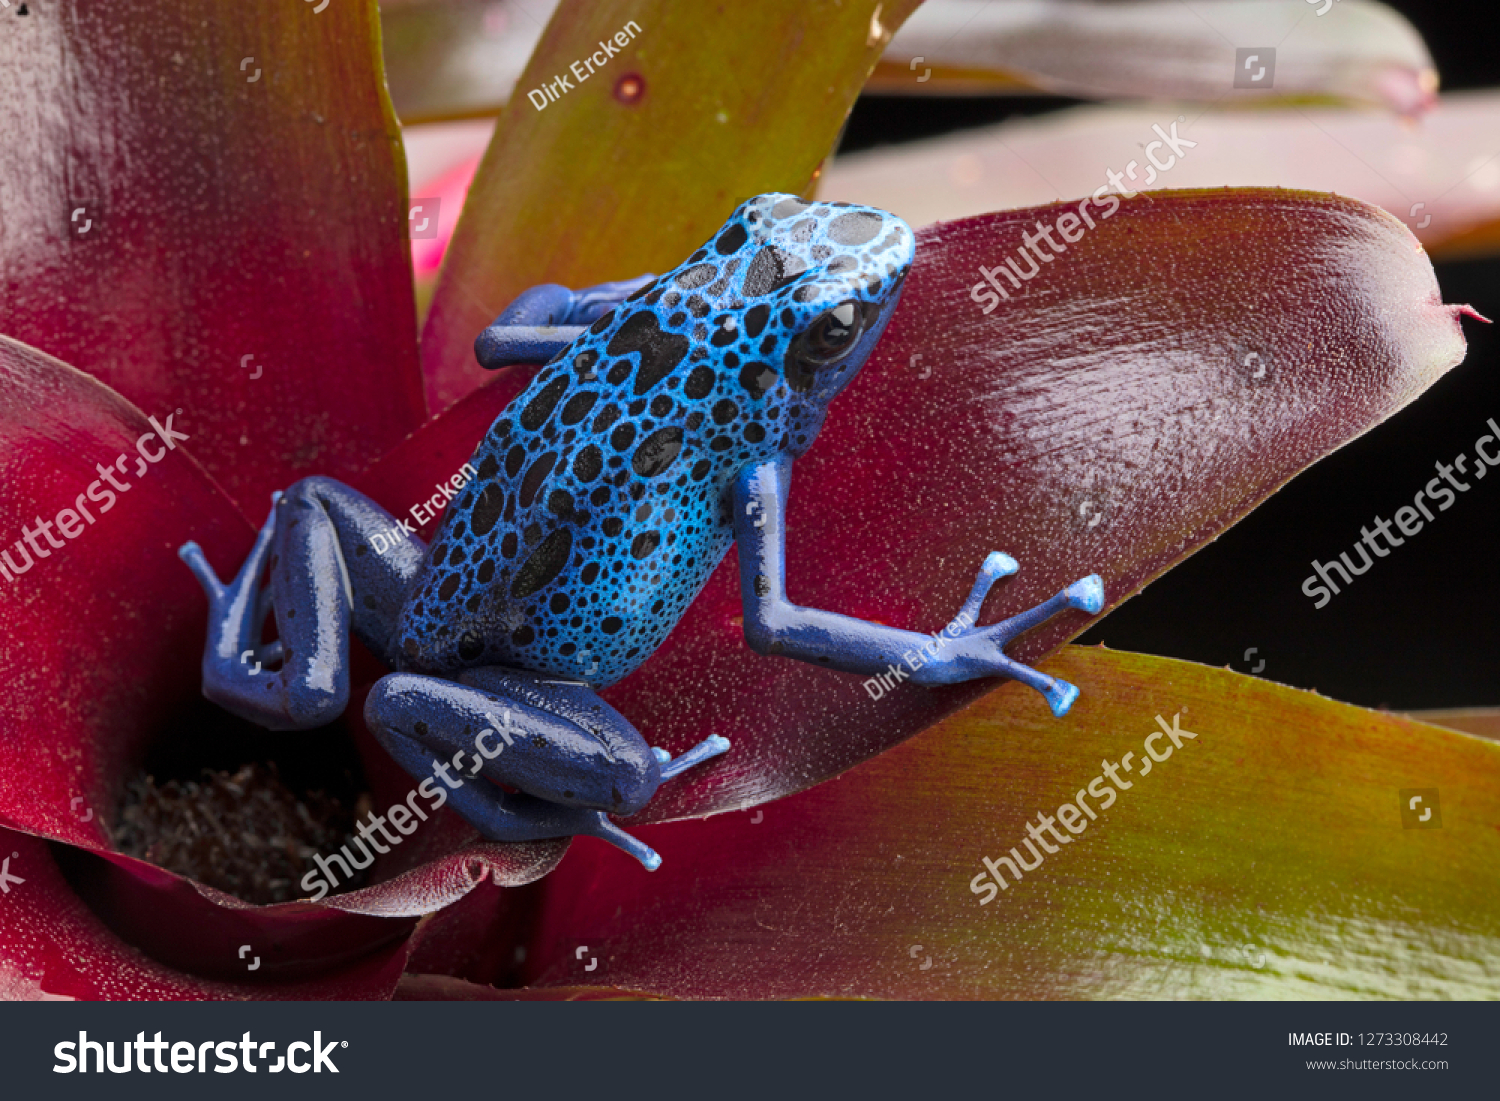 Blue and black poison dart frog, Dendrobates azureus. A beautiful poisonous rain forest animal in danger of extinction. Pet amphibian in a rainforest terrarium. 
 #1273308442